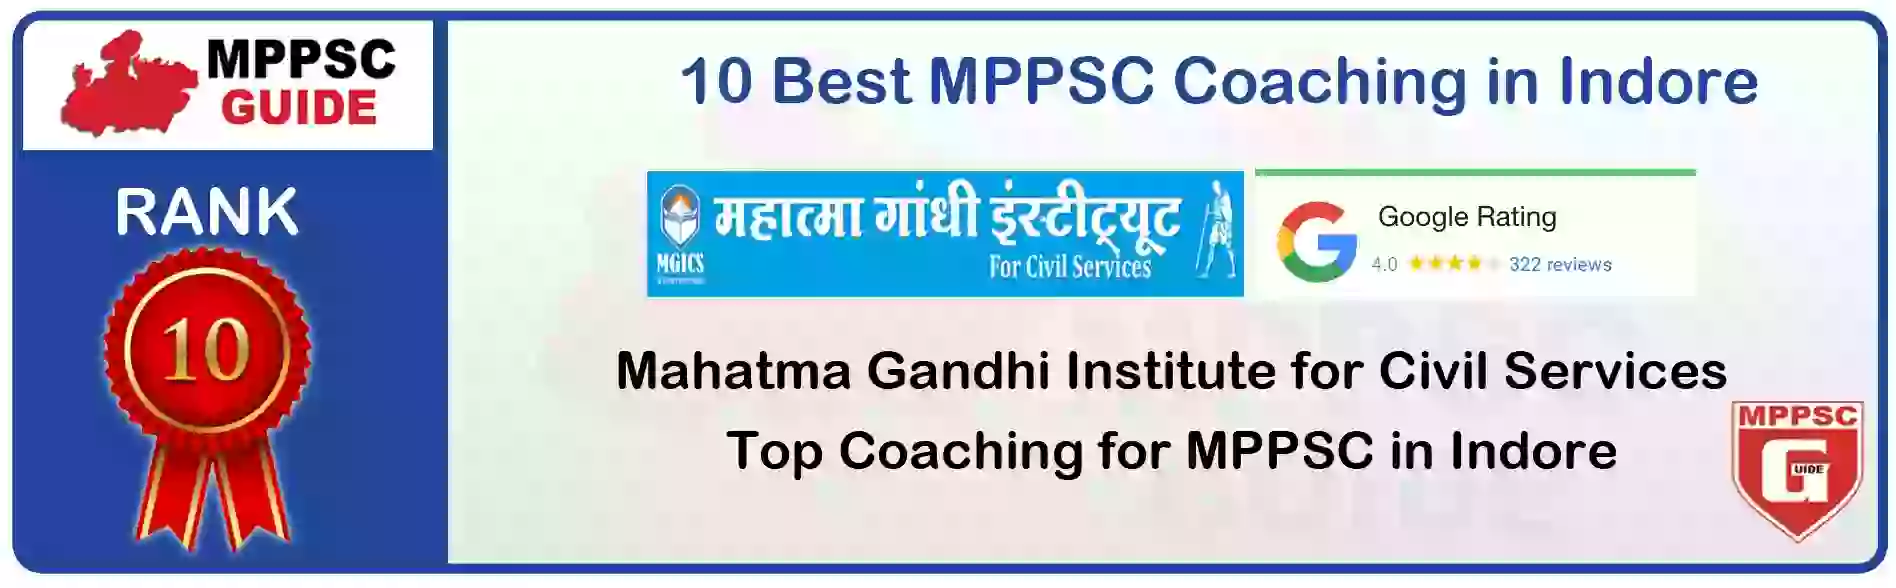 MPPSC Coaching in Ujjain, MPPSC Coaching Institute In Ujjain, Best MPPSC Coaching in Ujjain, Top 10 MPPSC Coaching In Ujjain, best mppsc coaching institute in ujjain, MPPSC Coaching Classes In Ujjain, MPPSC Online Coaching In Ujjain, mppsc coaching in Ujjain bhanwarkua